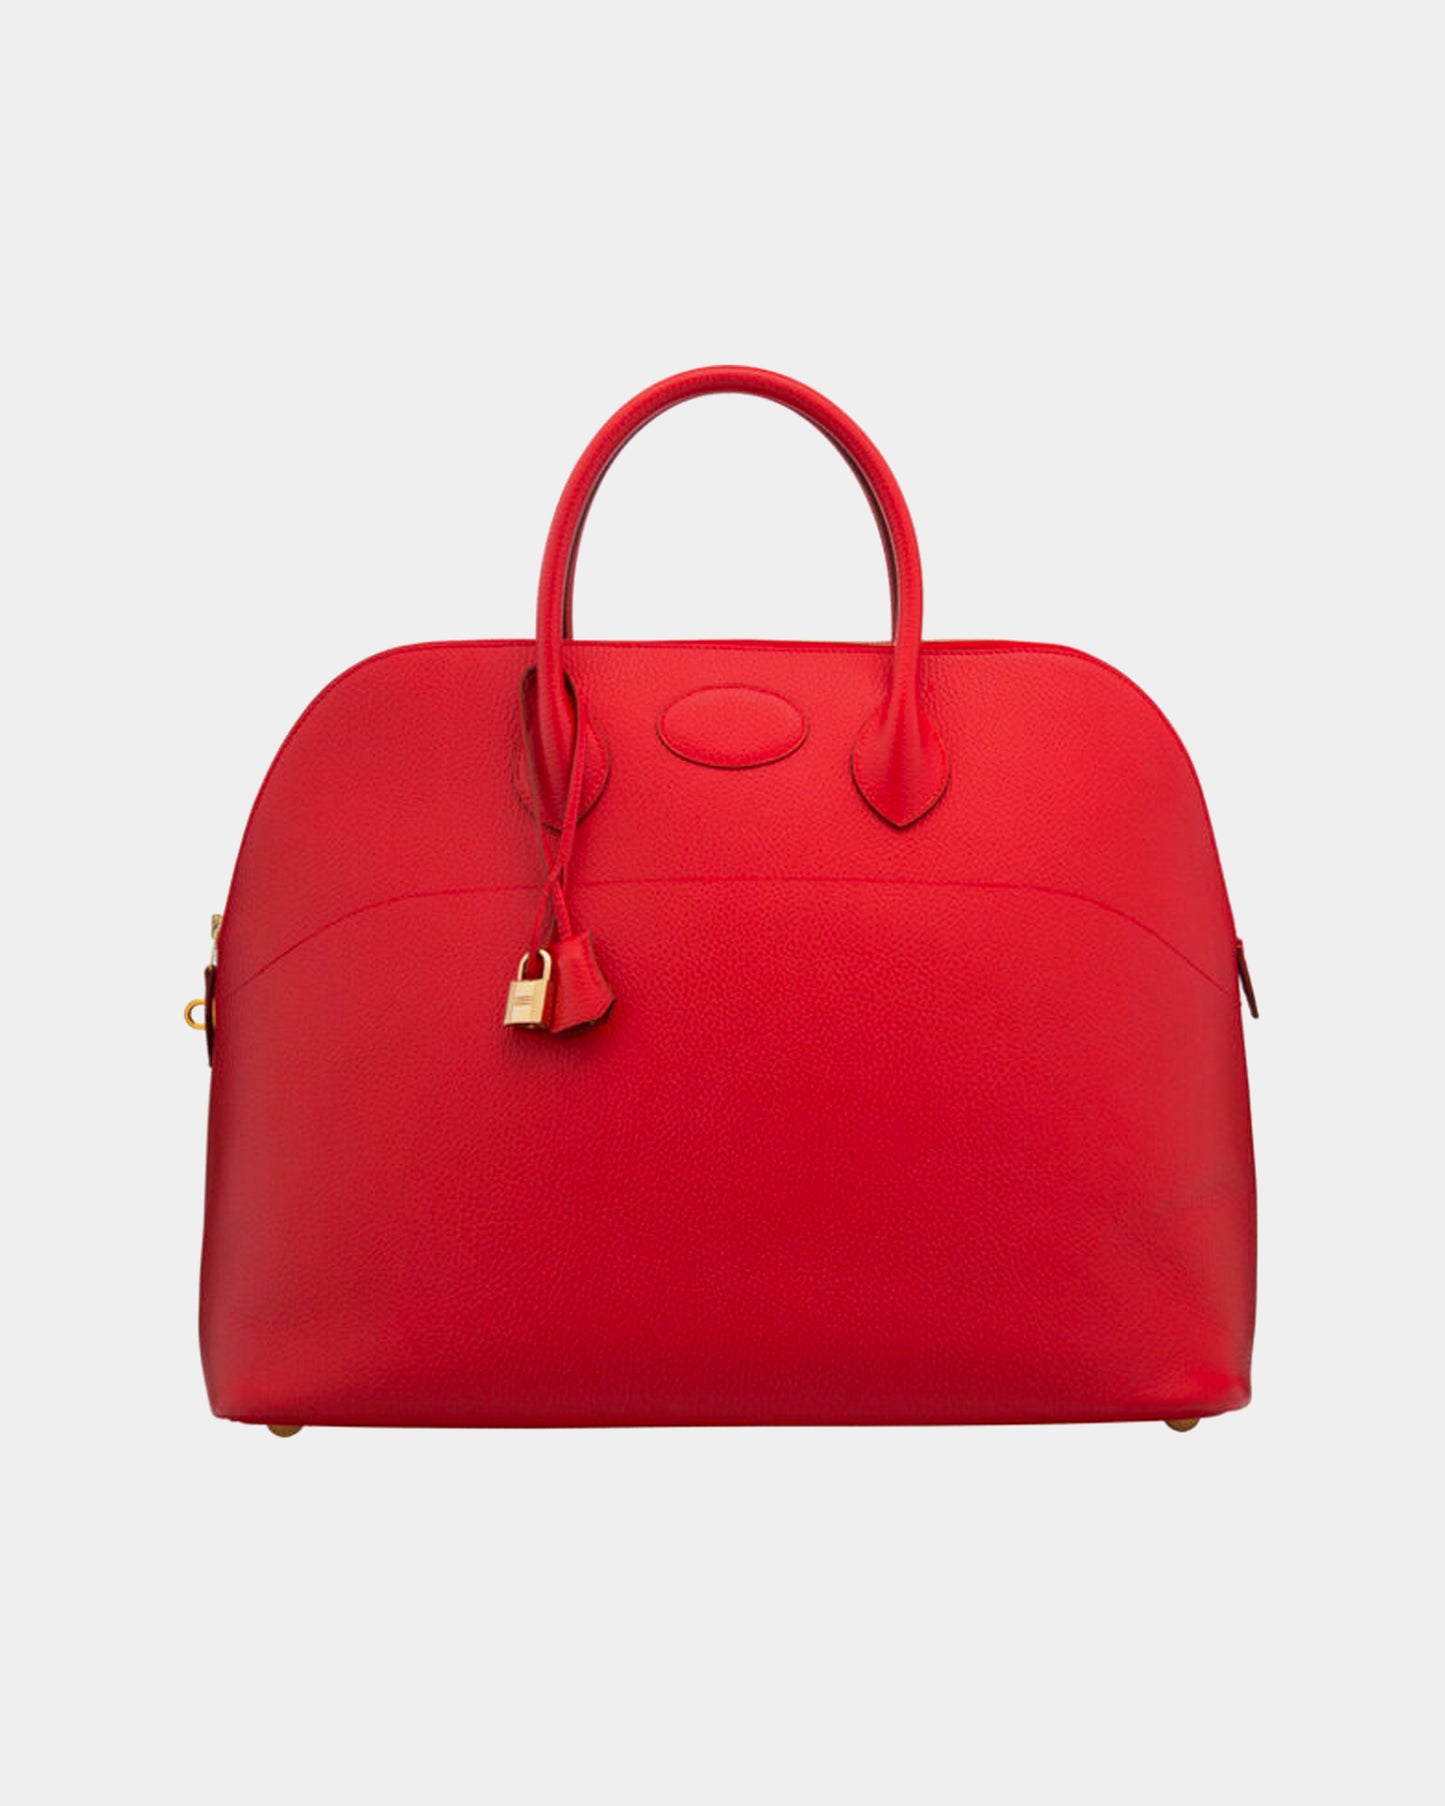 Hermès Vintage 1997 45cm Rouge Vif Ardennes Leather Travel Bolide Bag with Gold Hardware